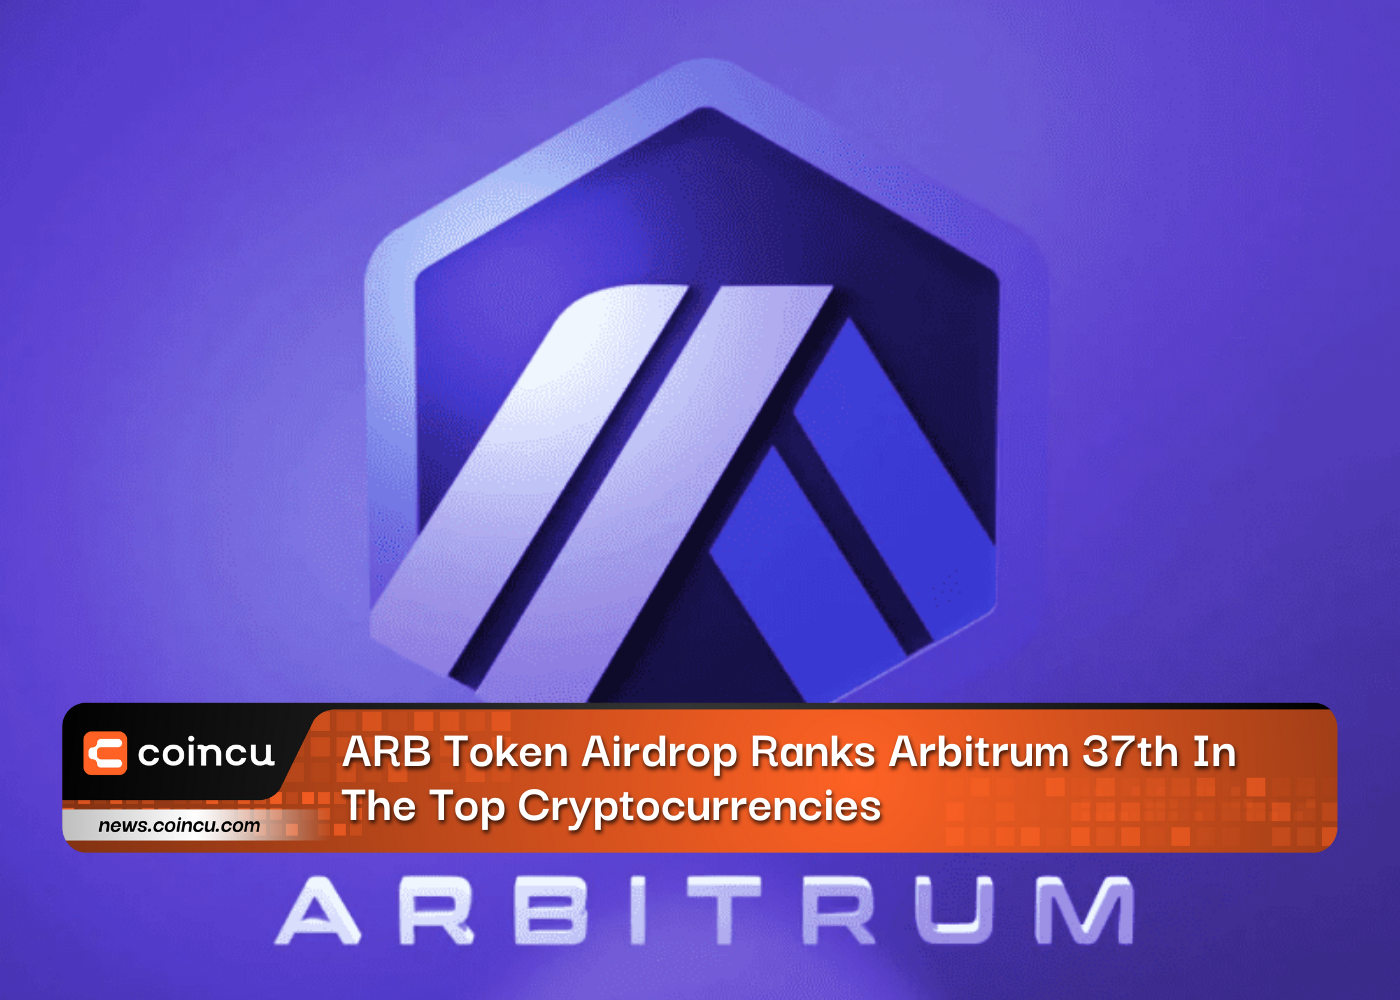 ARB Token Airdrop ubica a Arbitrum en el puesto 37 entre las principales criptomonedas